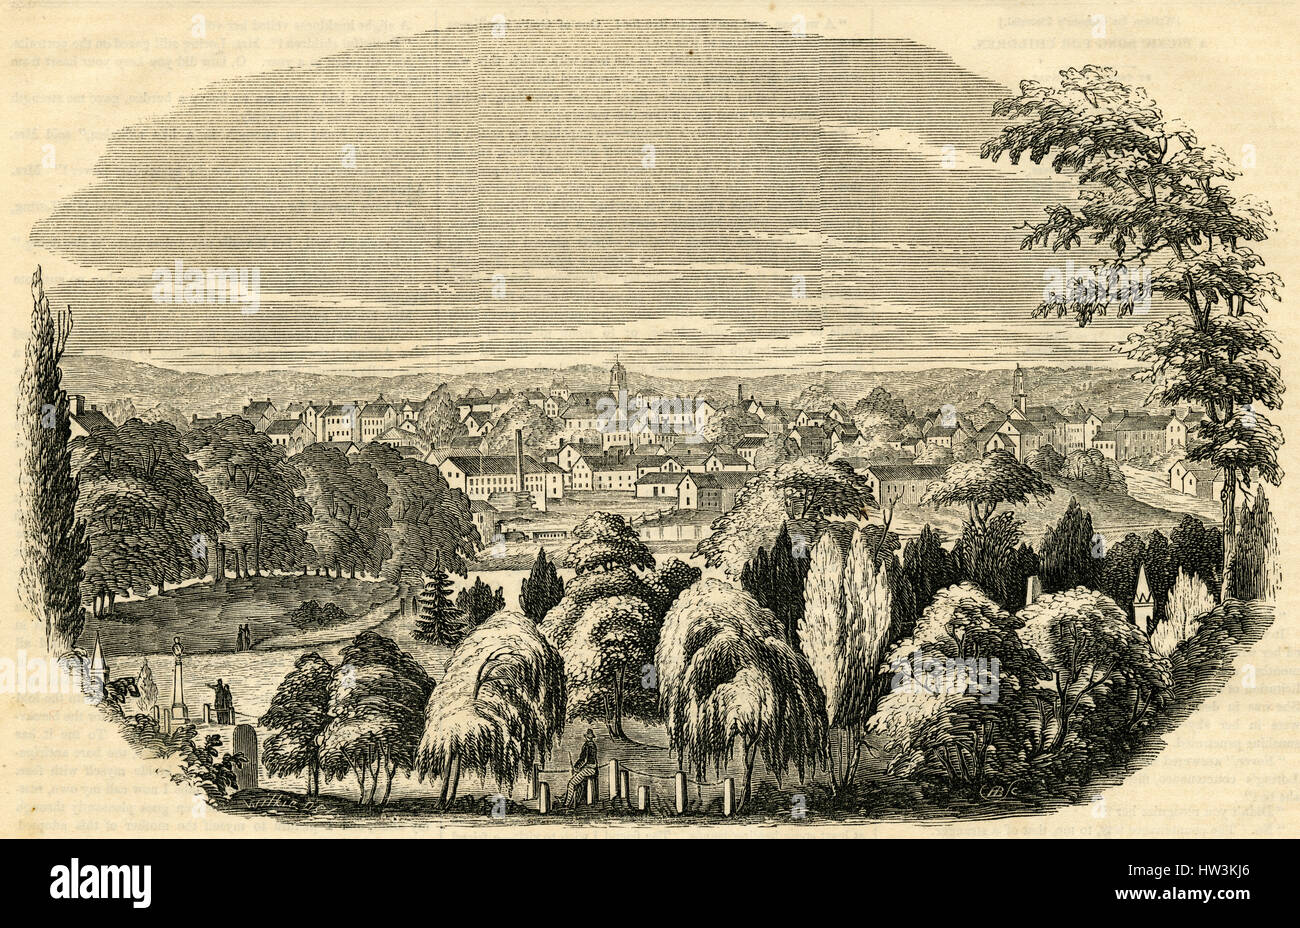 Antiken 1854 Gravur, "Ansicht der Danvers, vom Friedhof, Harmonie Hain." Danvers ist eine Stadt im Essex County, Massachusetts, ursprünglich bekannt als Salem-Dorf. QUELLE: ORIGINAL GRAVUR. Stockfoto